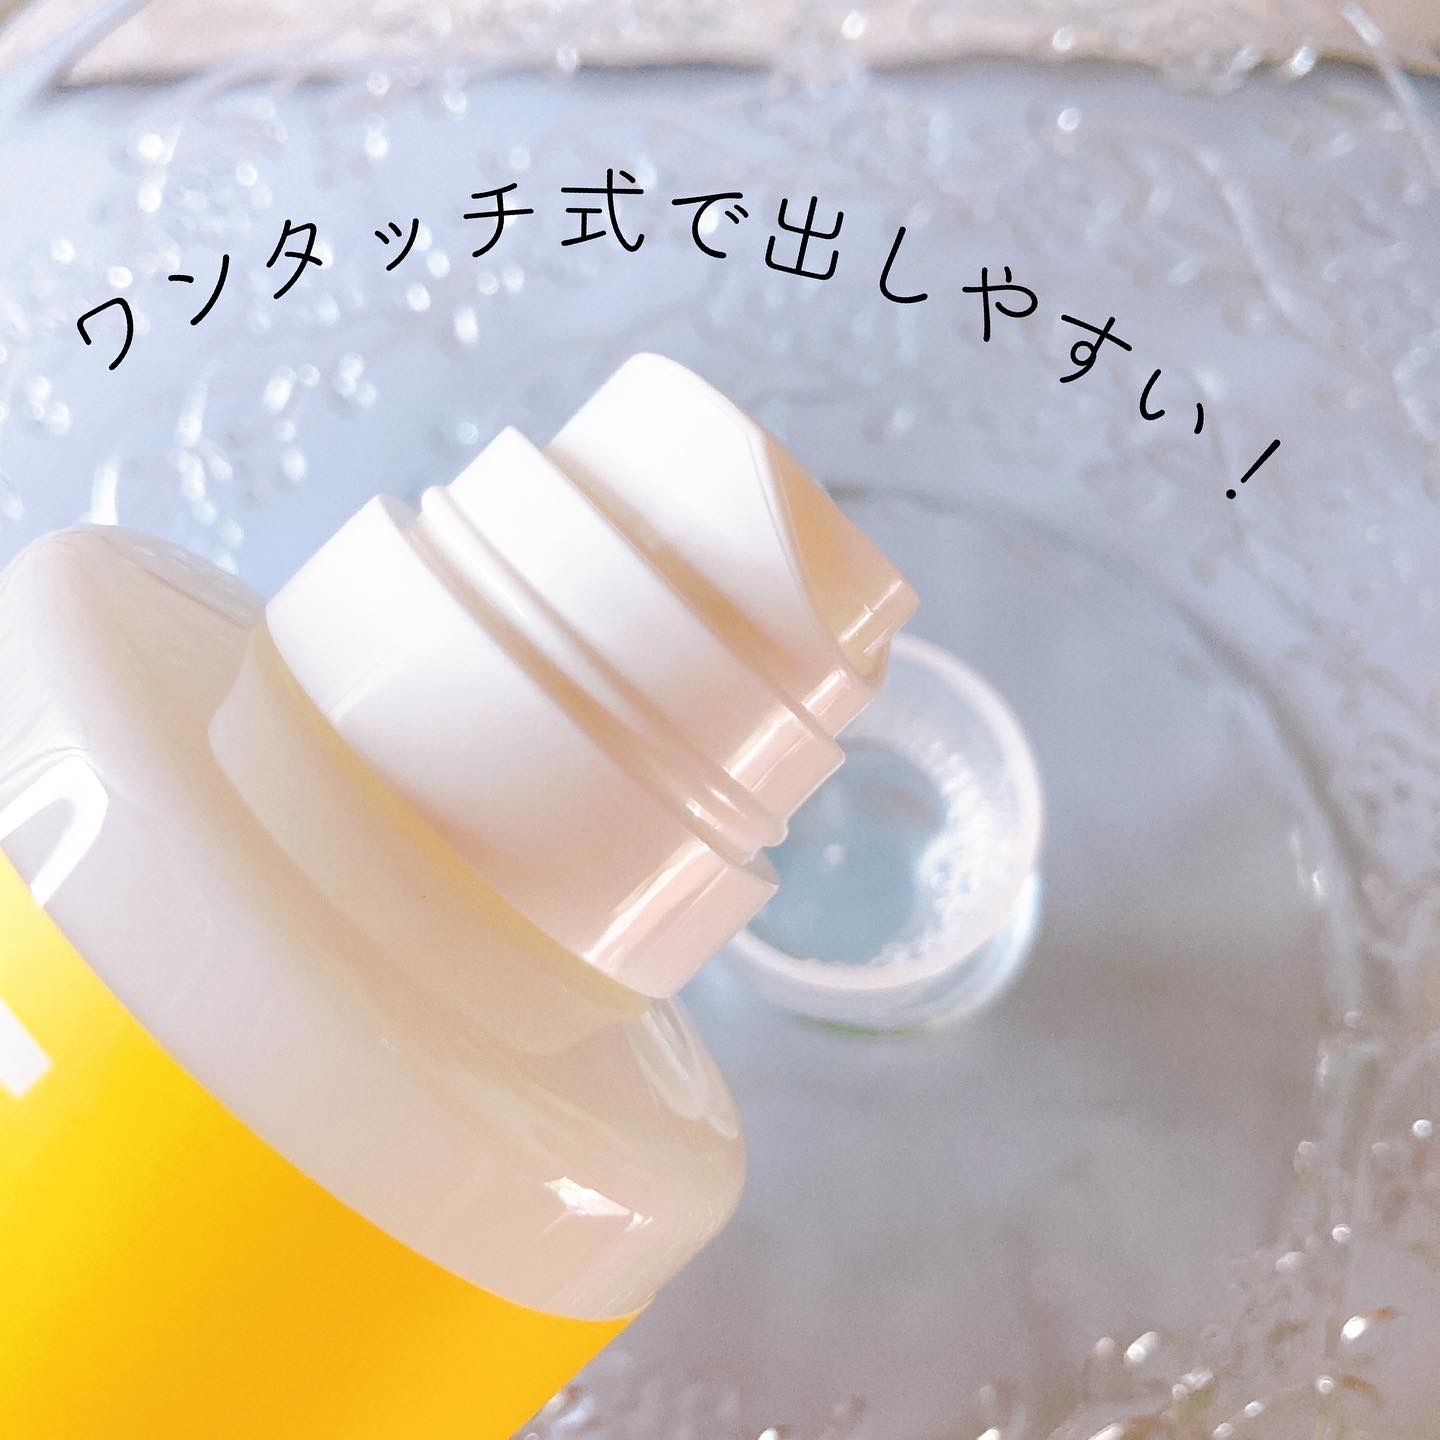 Shirora シローラマウスウォッシュレモン300ml/1,650円 税込を使ったメグさんのクチコミ画像2